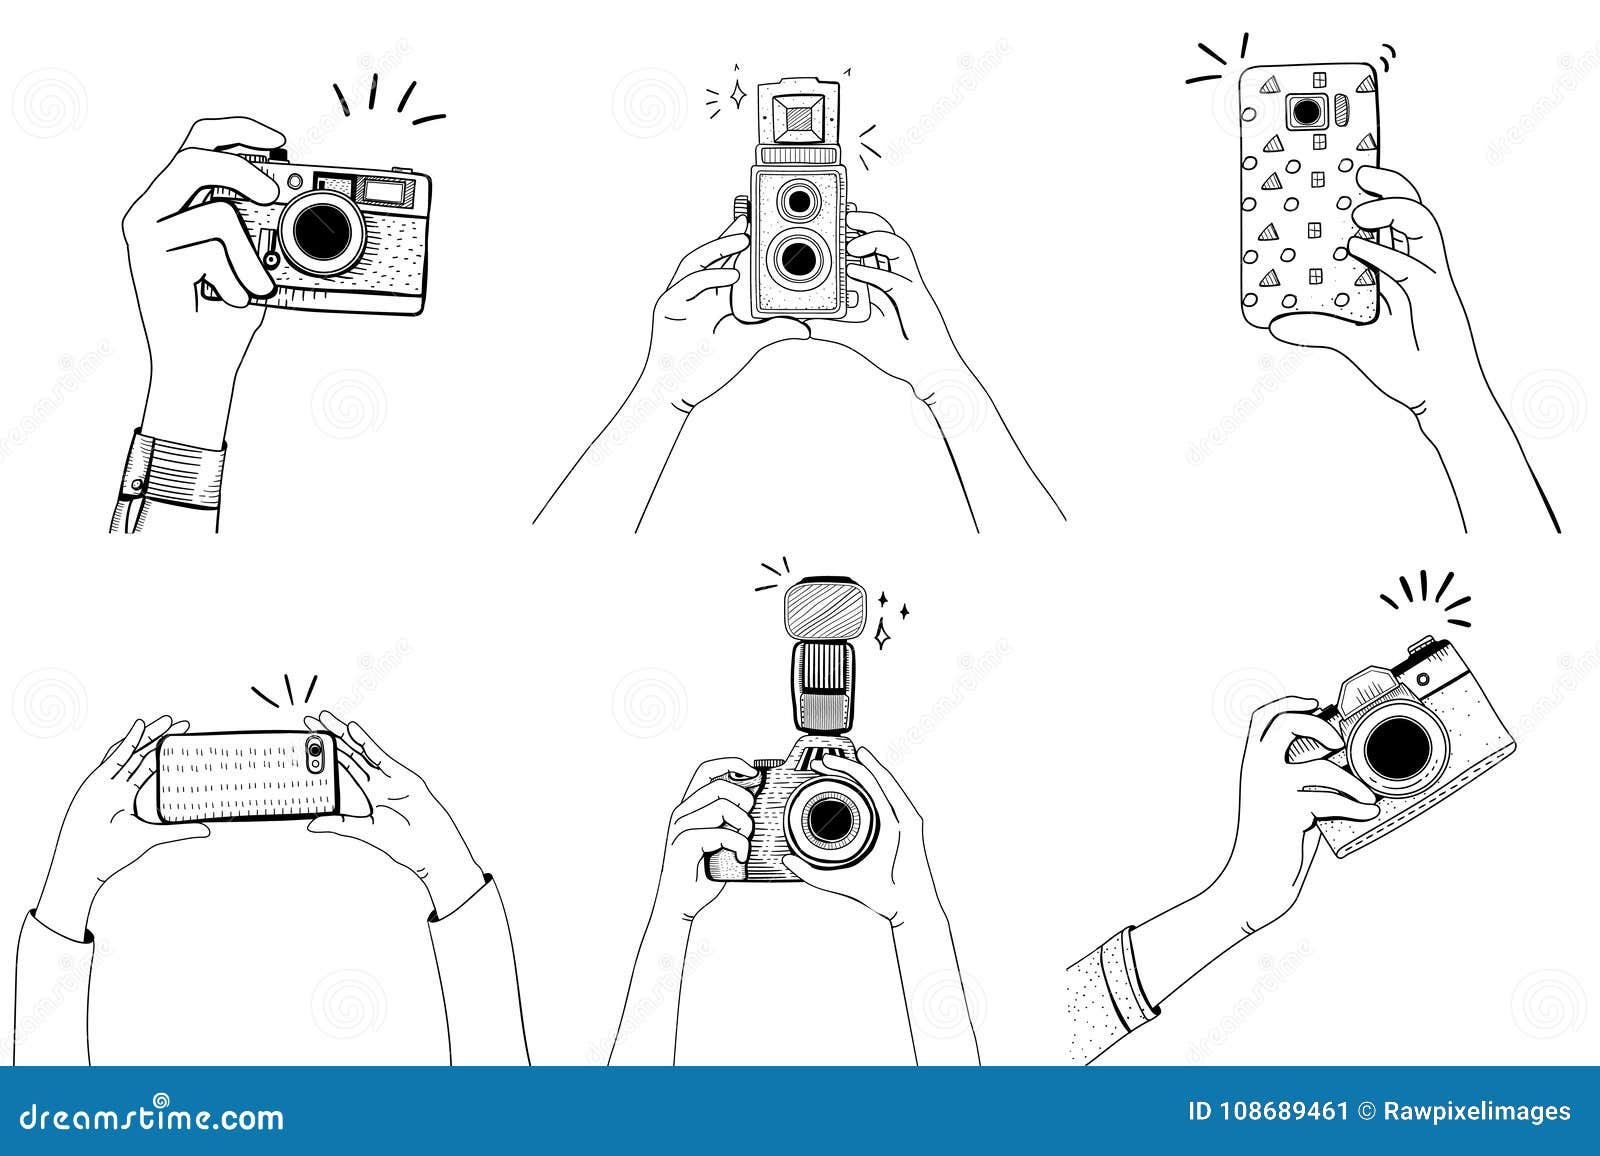 Камера с изображением на телефон. Маленький рисунок фотоаппарата. Фотоаппарат в руках референс. Руки с фотоаппаратом нарисованные. Фотоаппарат в руках рисунок.